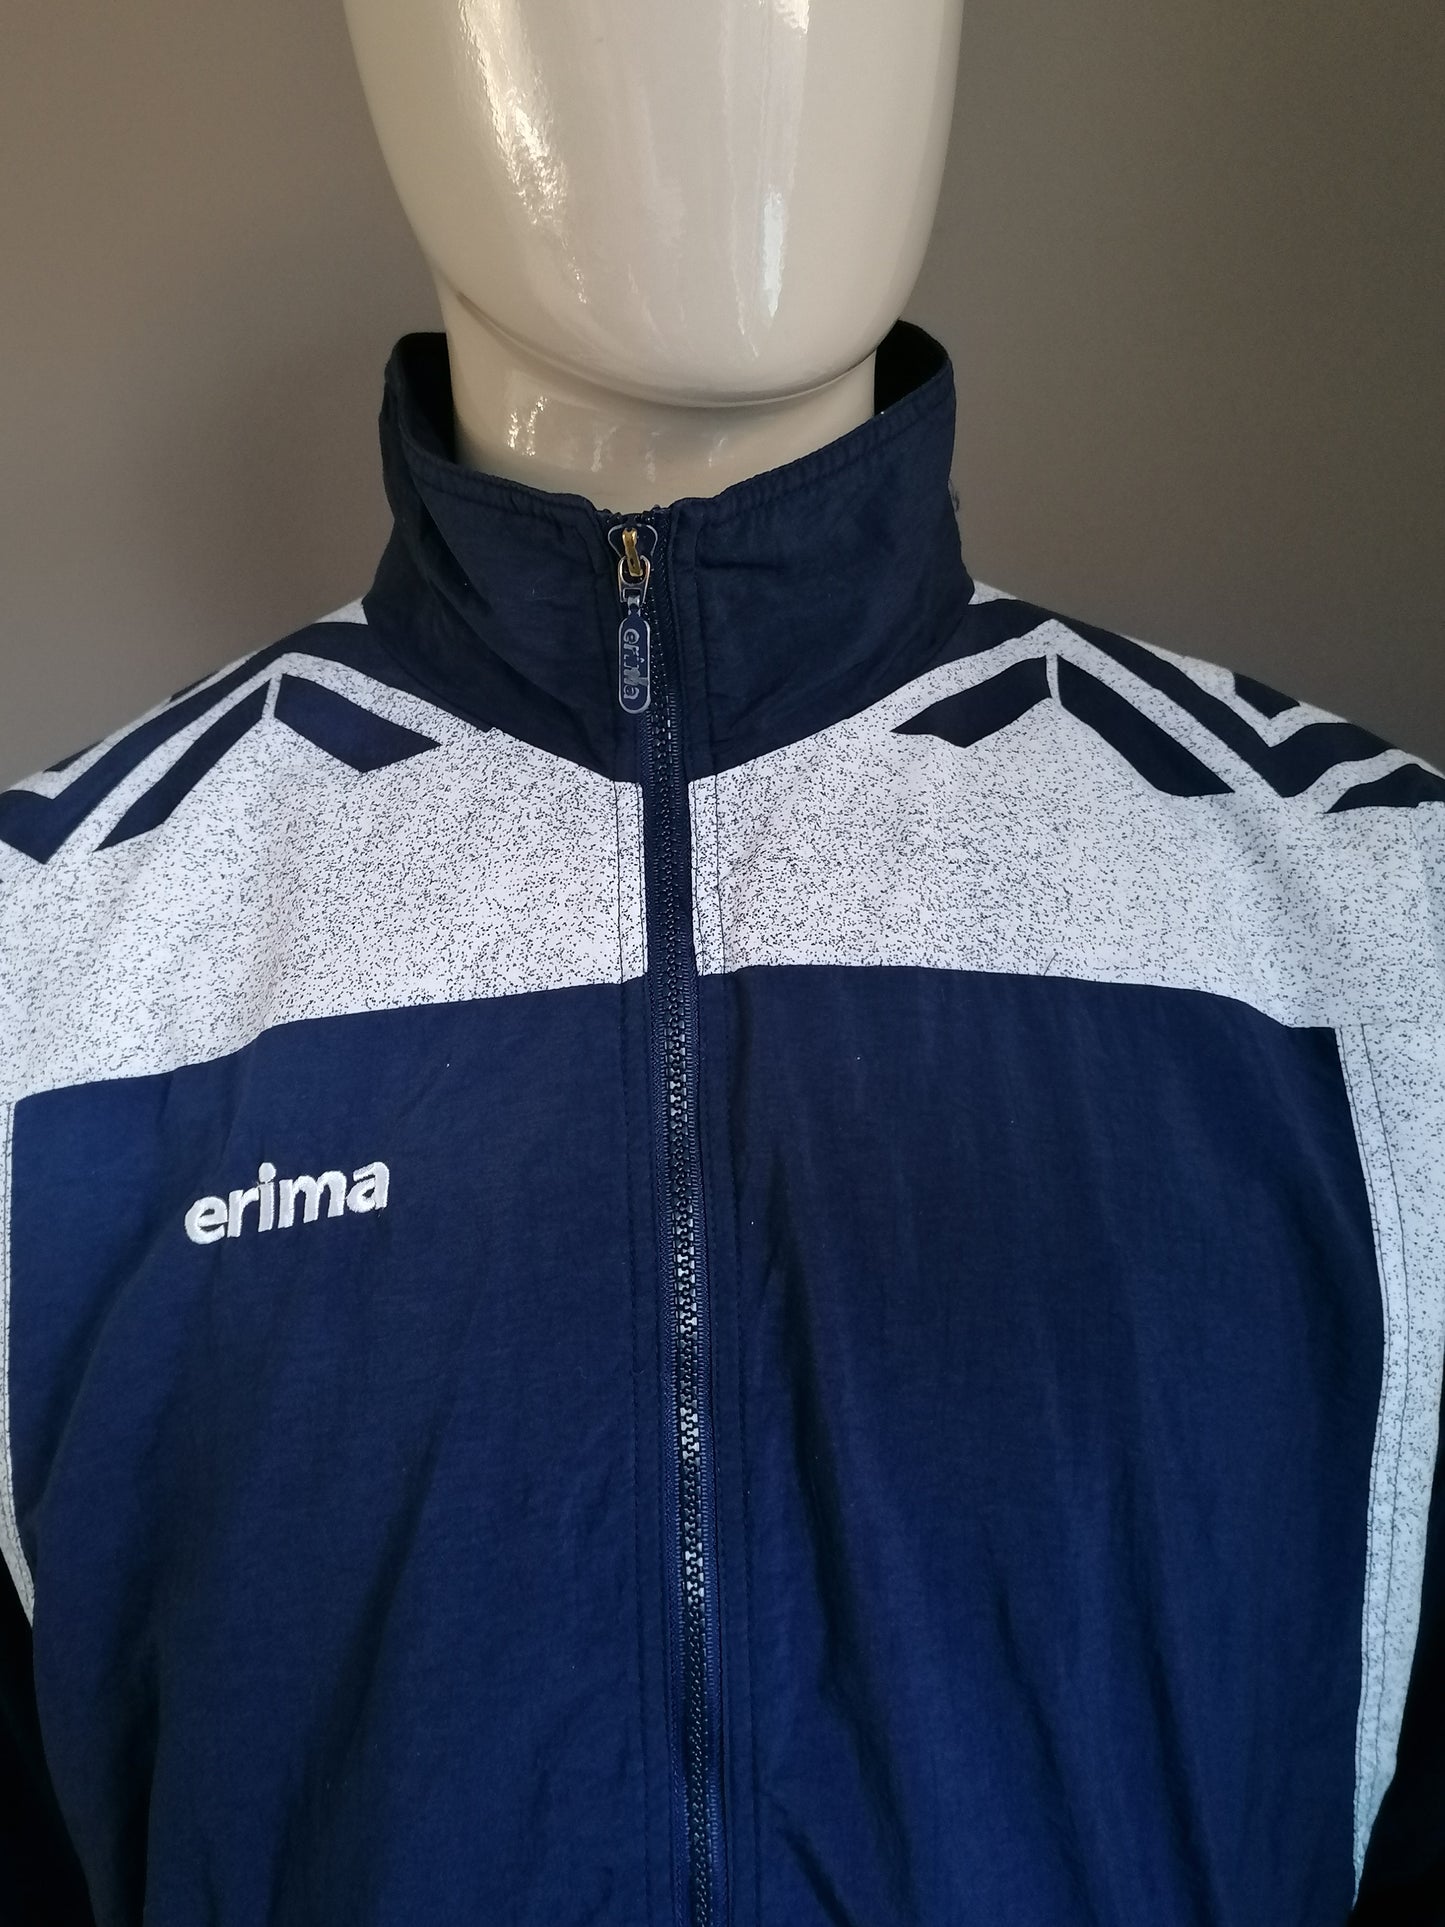 Giacca da allenamento vintage Erima 80S-90. Colorato blu bianco bianco. Taglia XL.